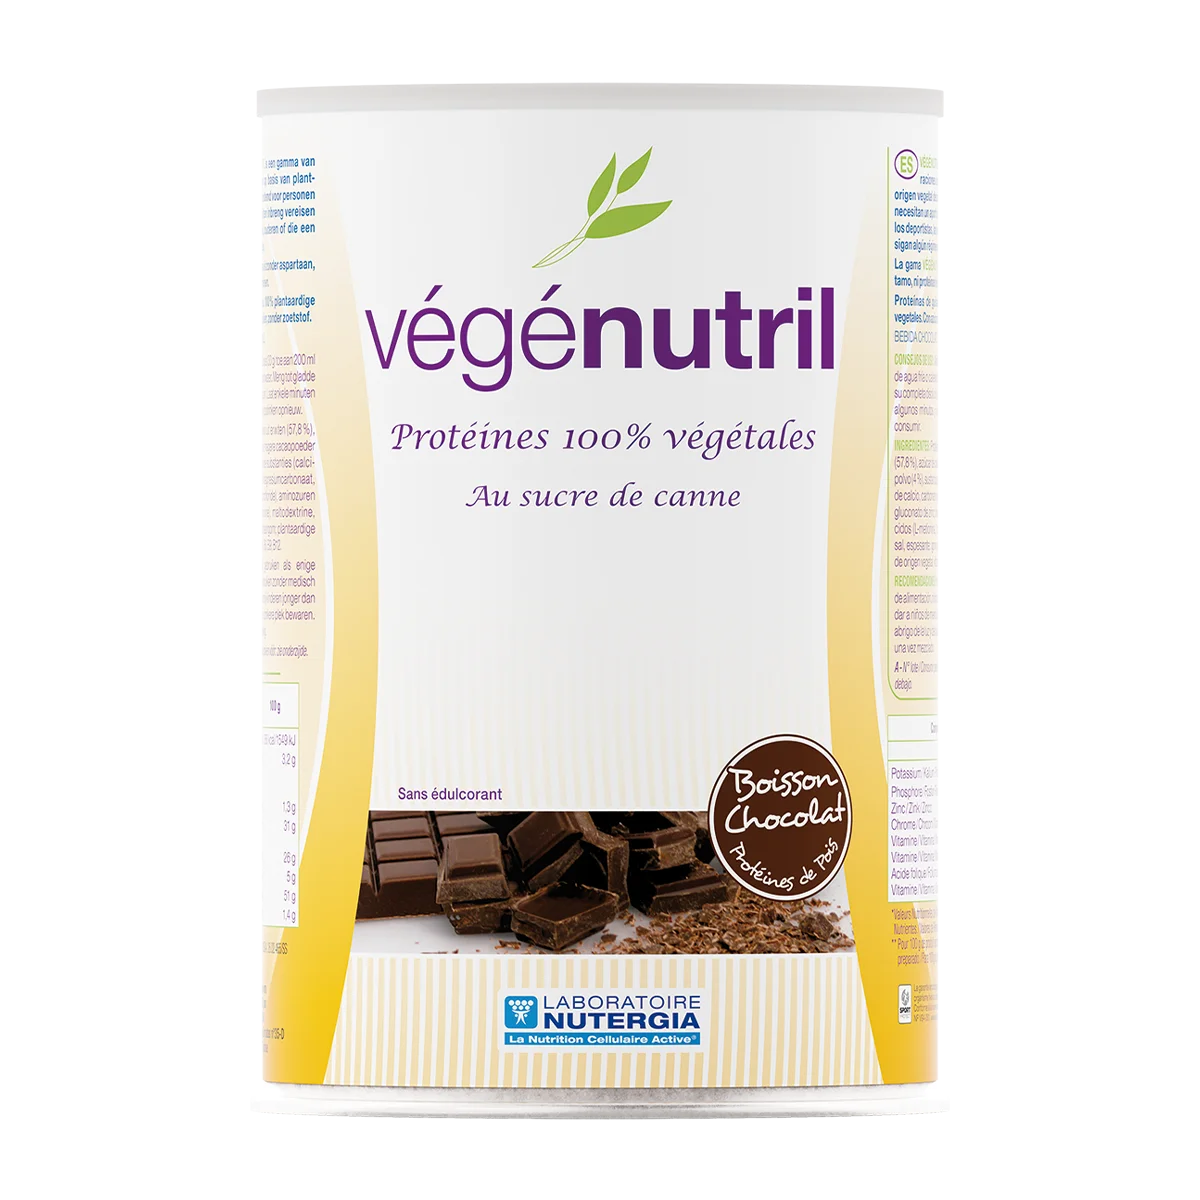 VEGENUTRIL CHOCOLATE (proteina de guisante) - Bote 300 gramos (10 Preparaciones) - Nutergia